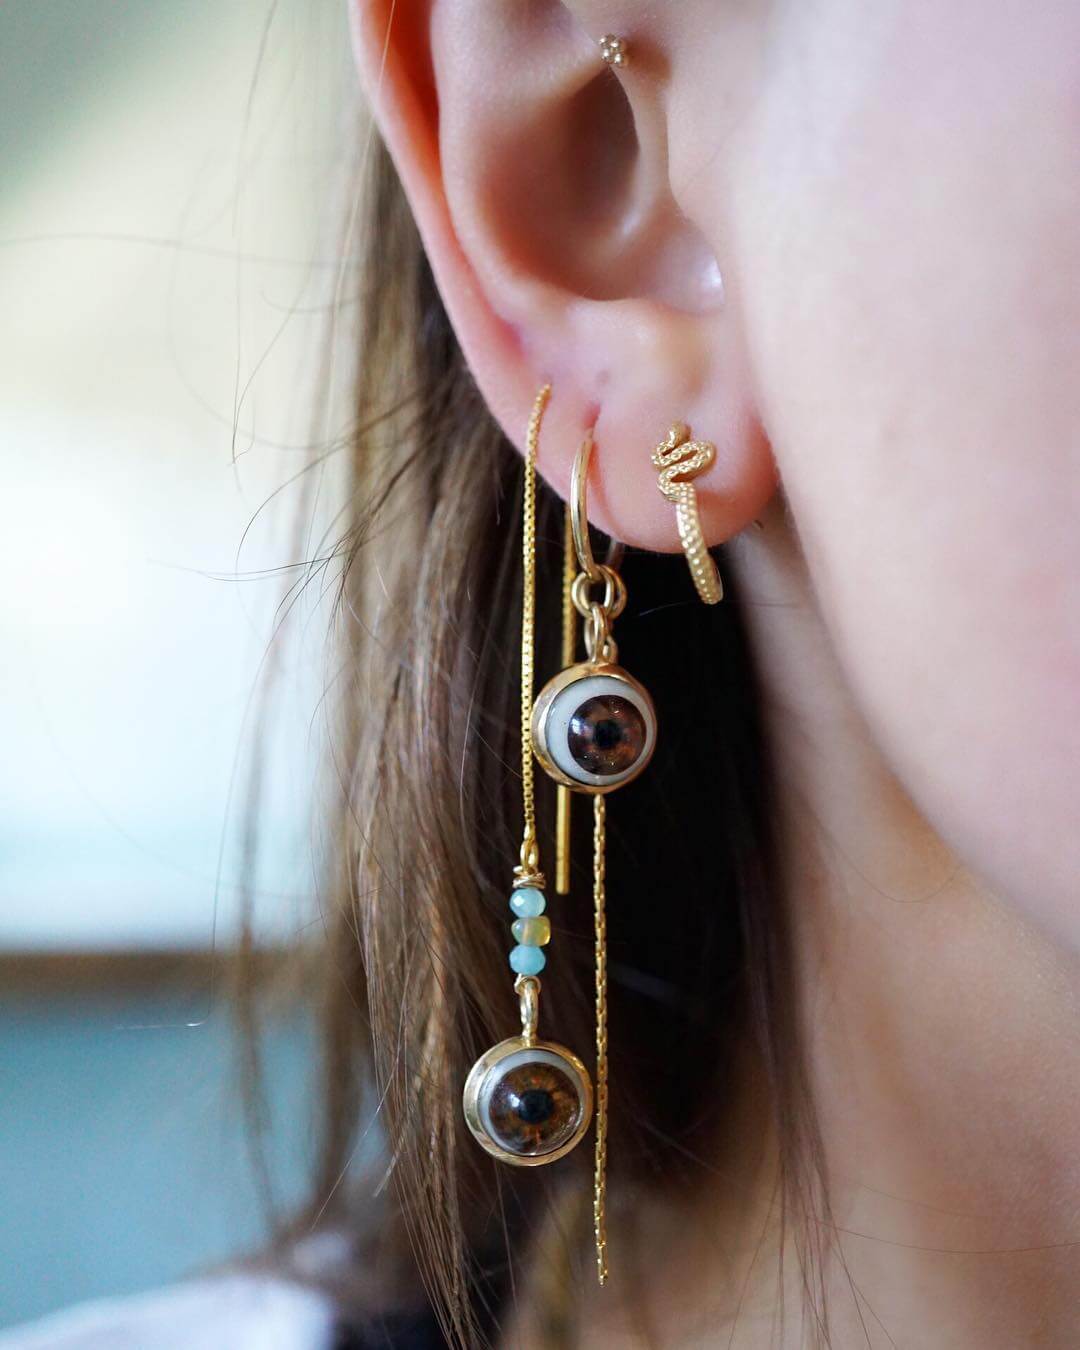 Threader earrings trending earring design